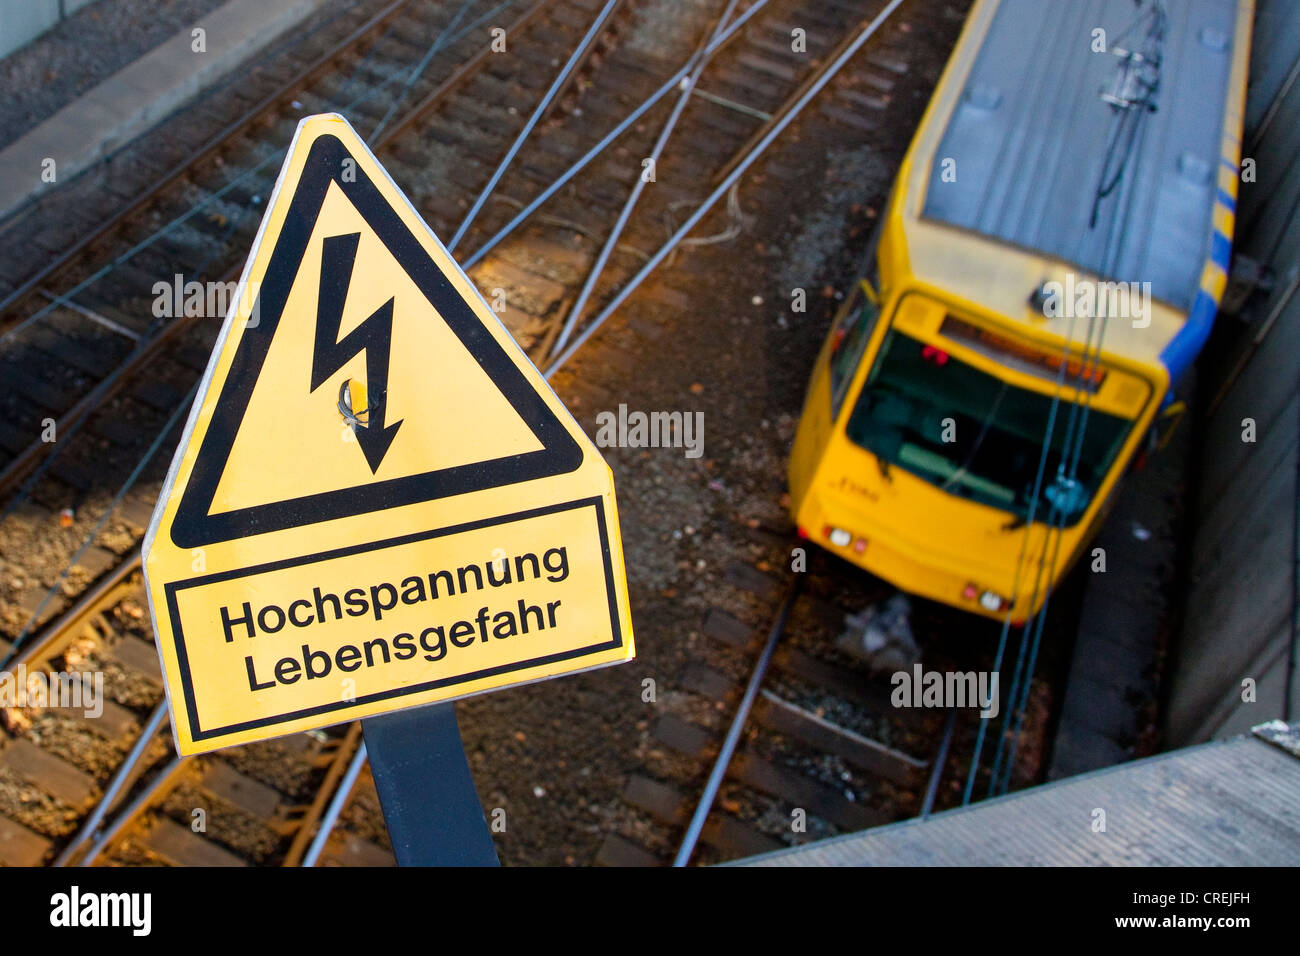 Firmar, rotulación "Hochspannung Lebensgefahr', Alemán para "alta tensión, peligro de vida", en una línea de ferrocarril de la suburbana Foto de stock